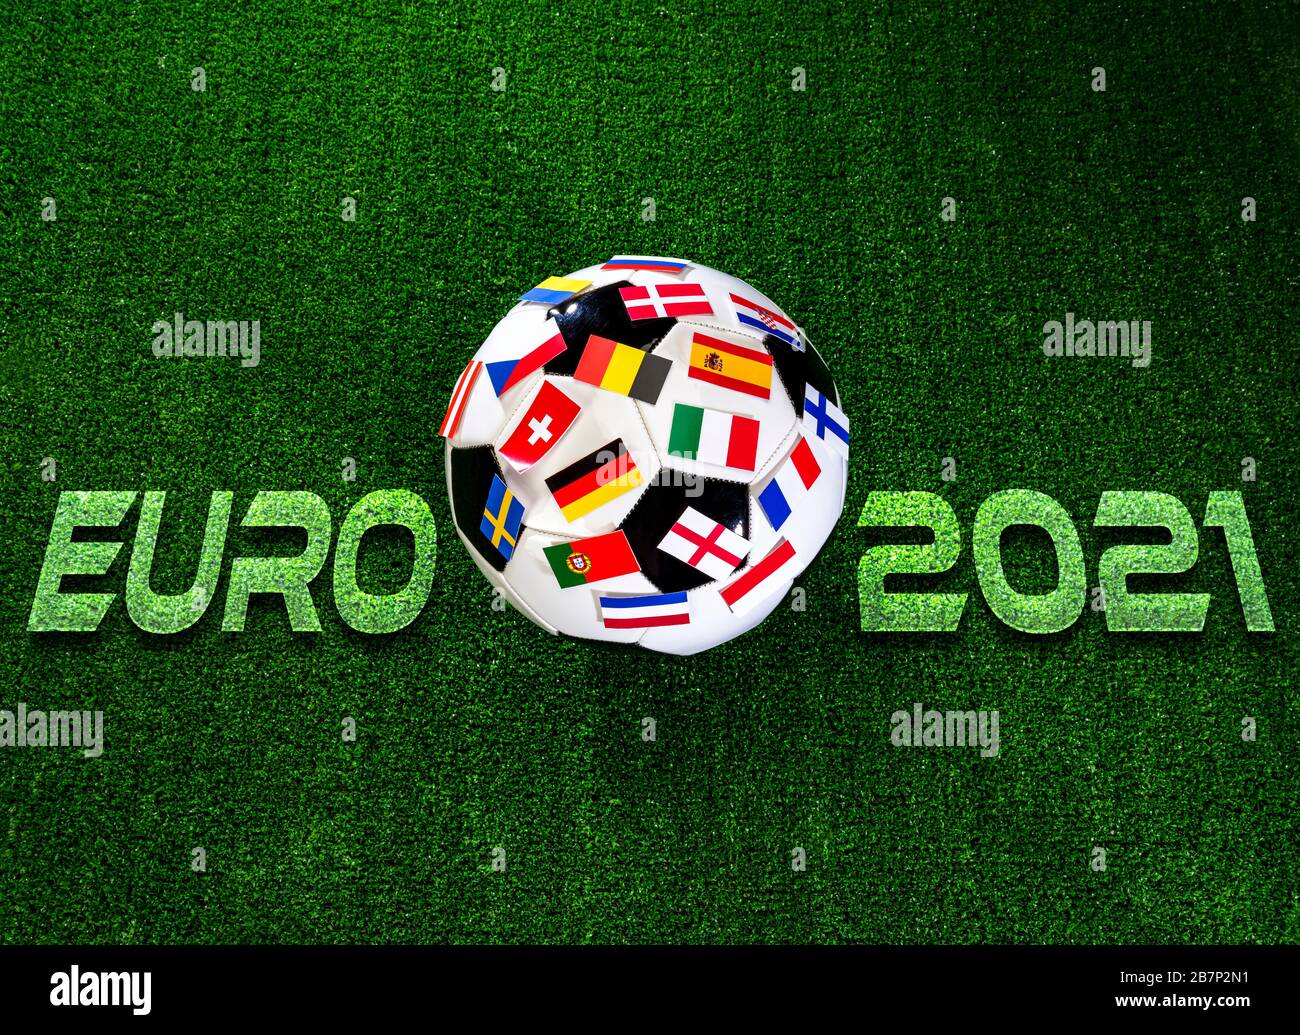 Campionato di calcio Euro 2021. Pallone da calcio con bandiere dei paesi europei Foto Stock